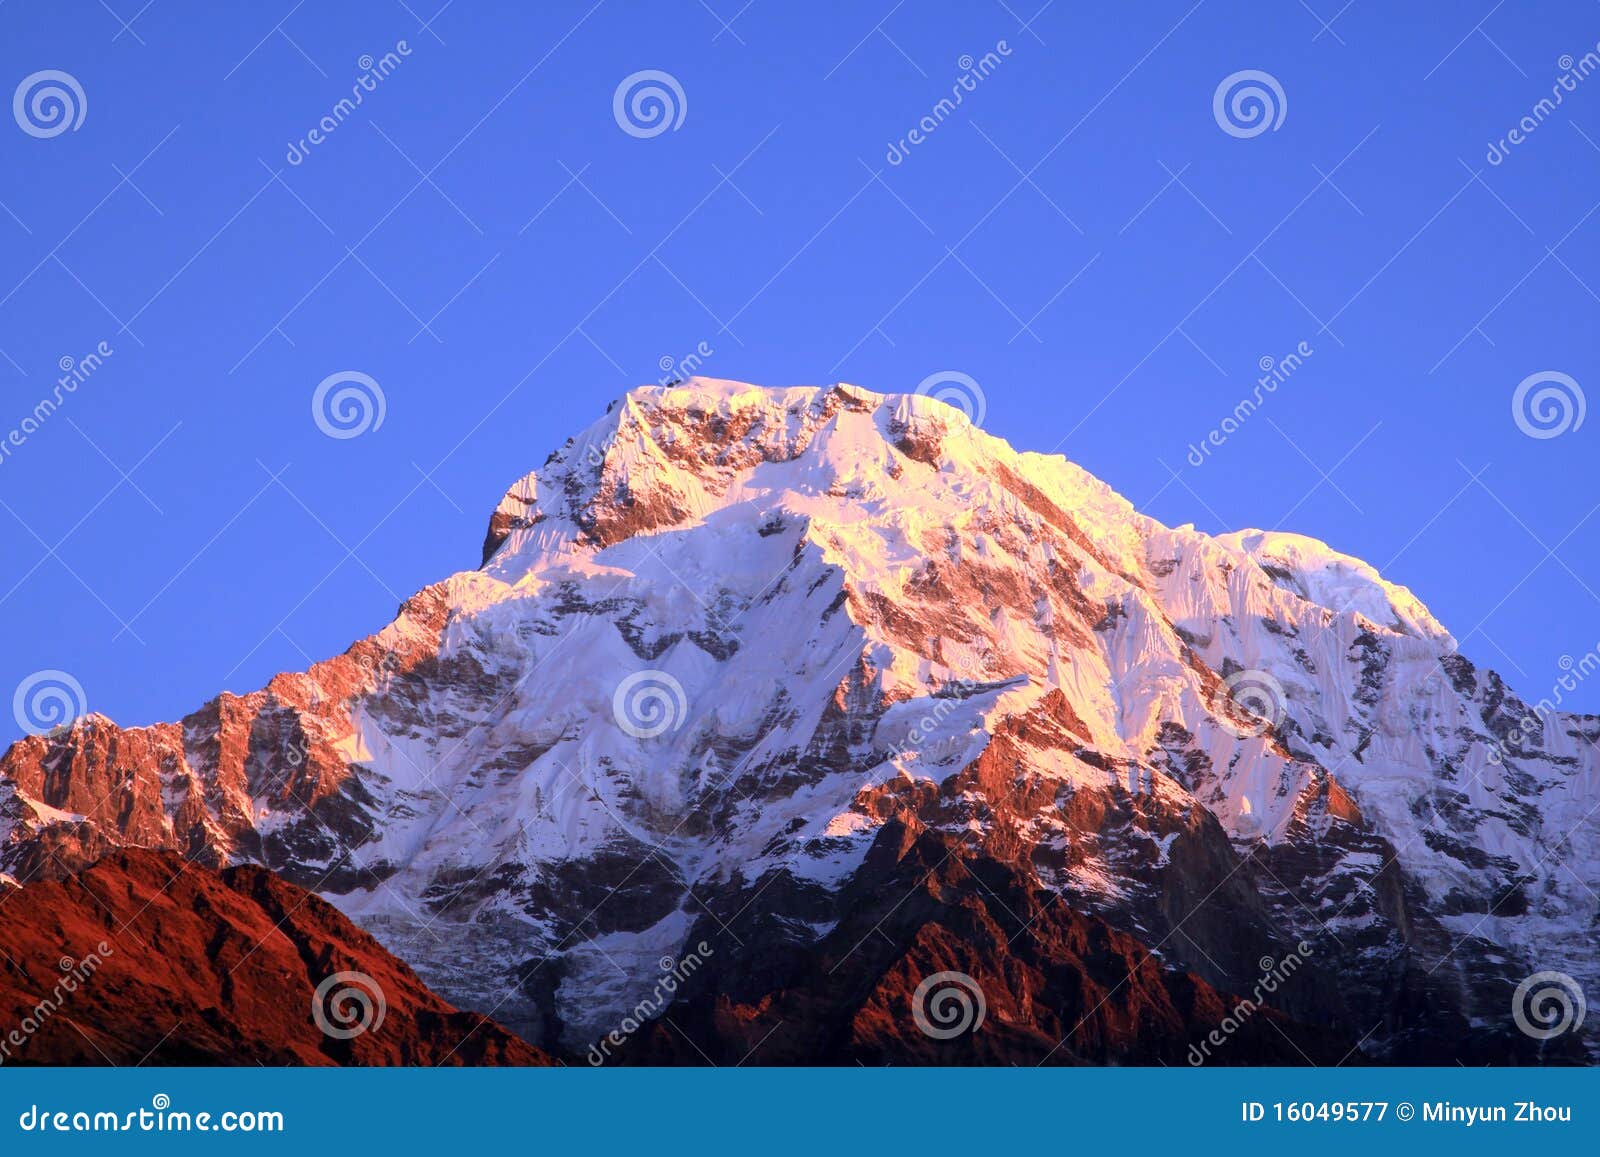 the himalaya mountain peak